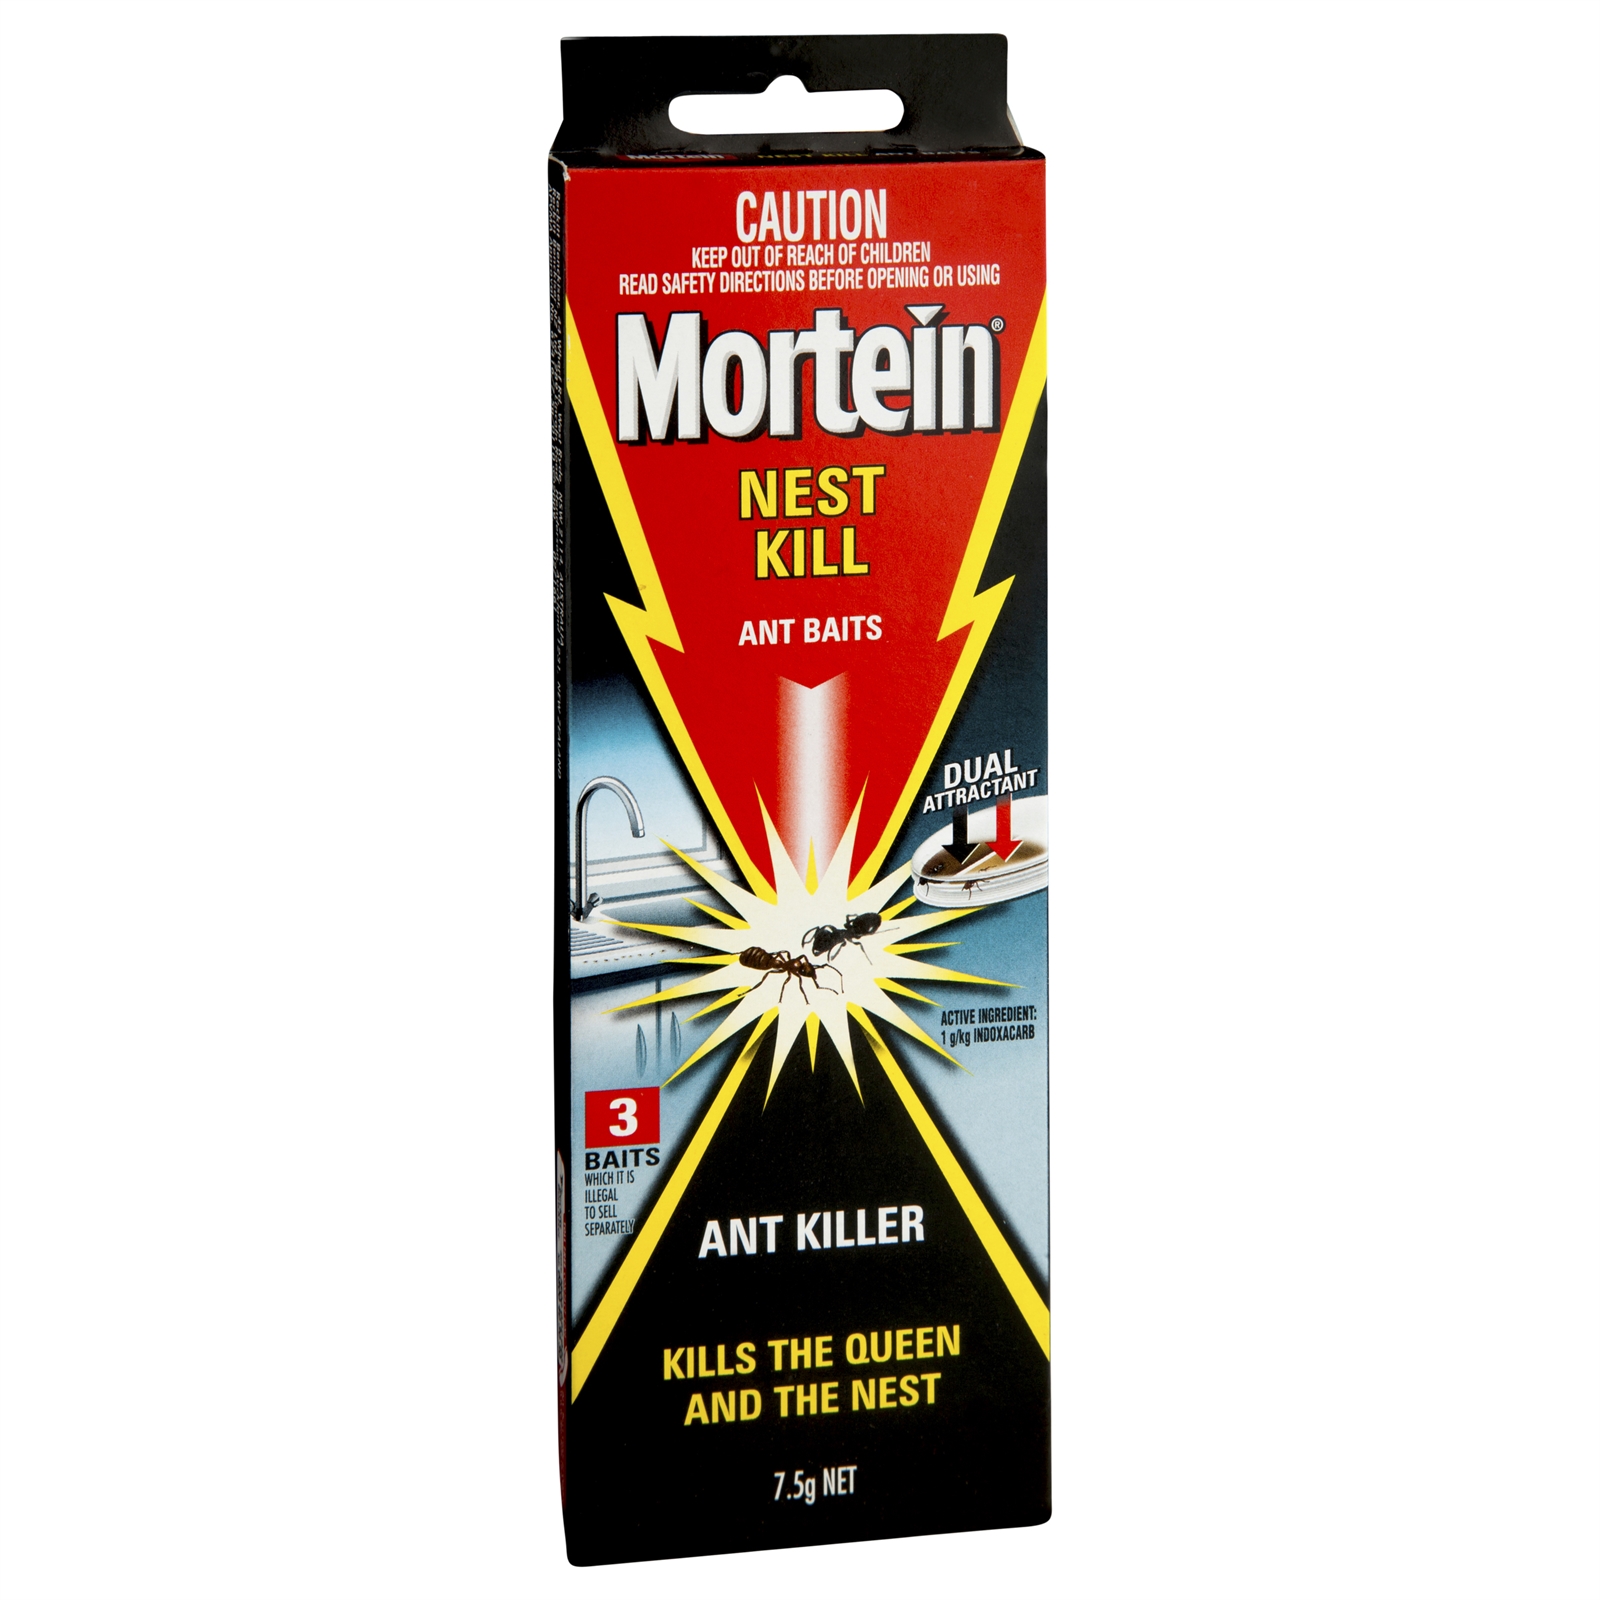 Mortein Nest Kill Ant Bait - 3 Pack